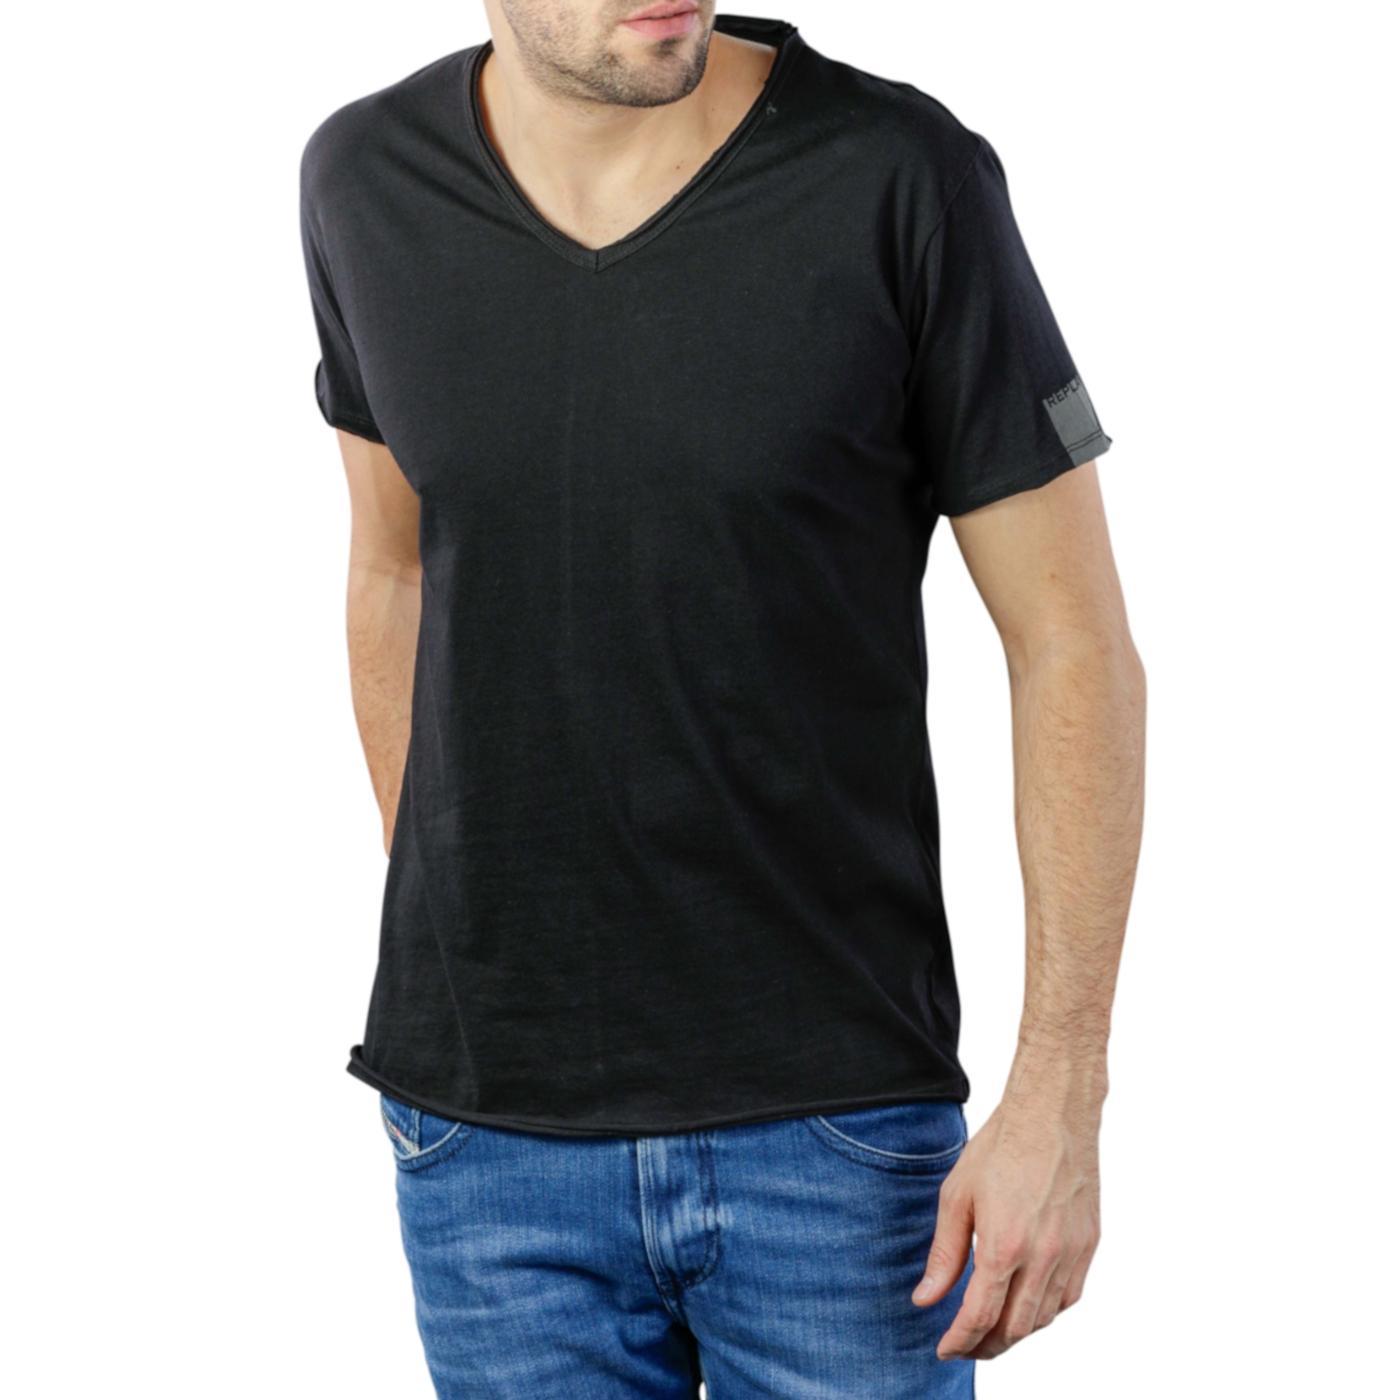 Replay - Camiseta Replay cuello en 'V' en color negro -/df01